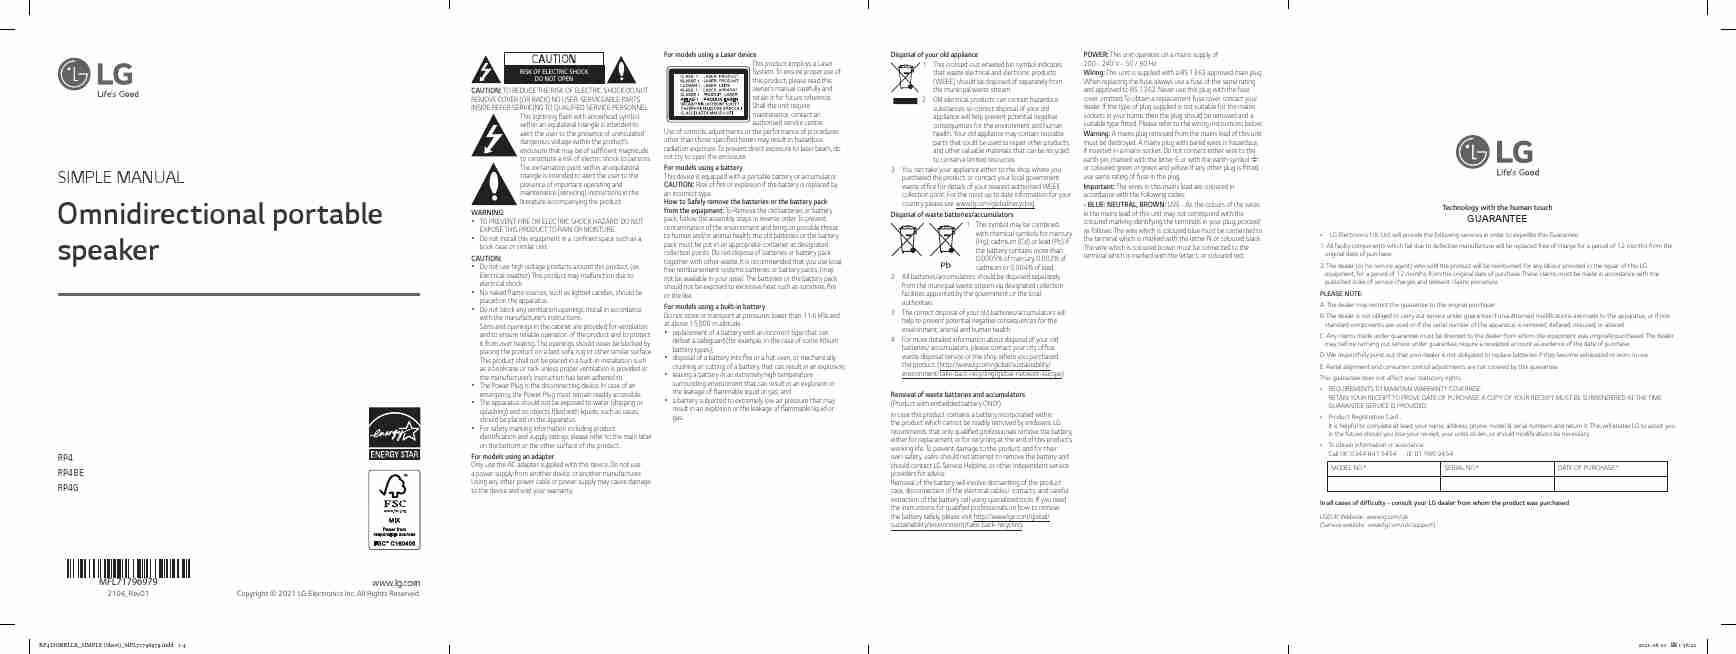 LG RP4BE-page_pdf